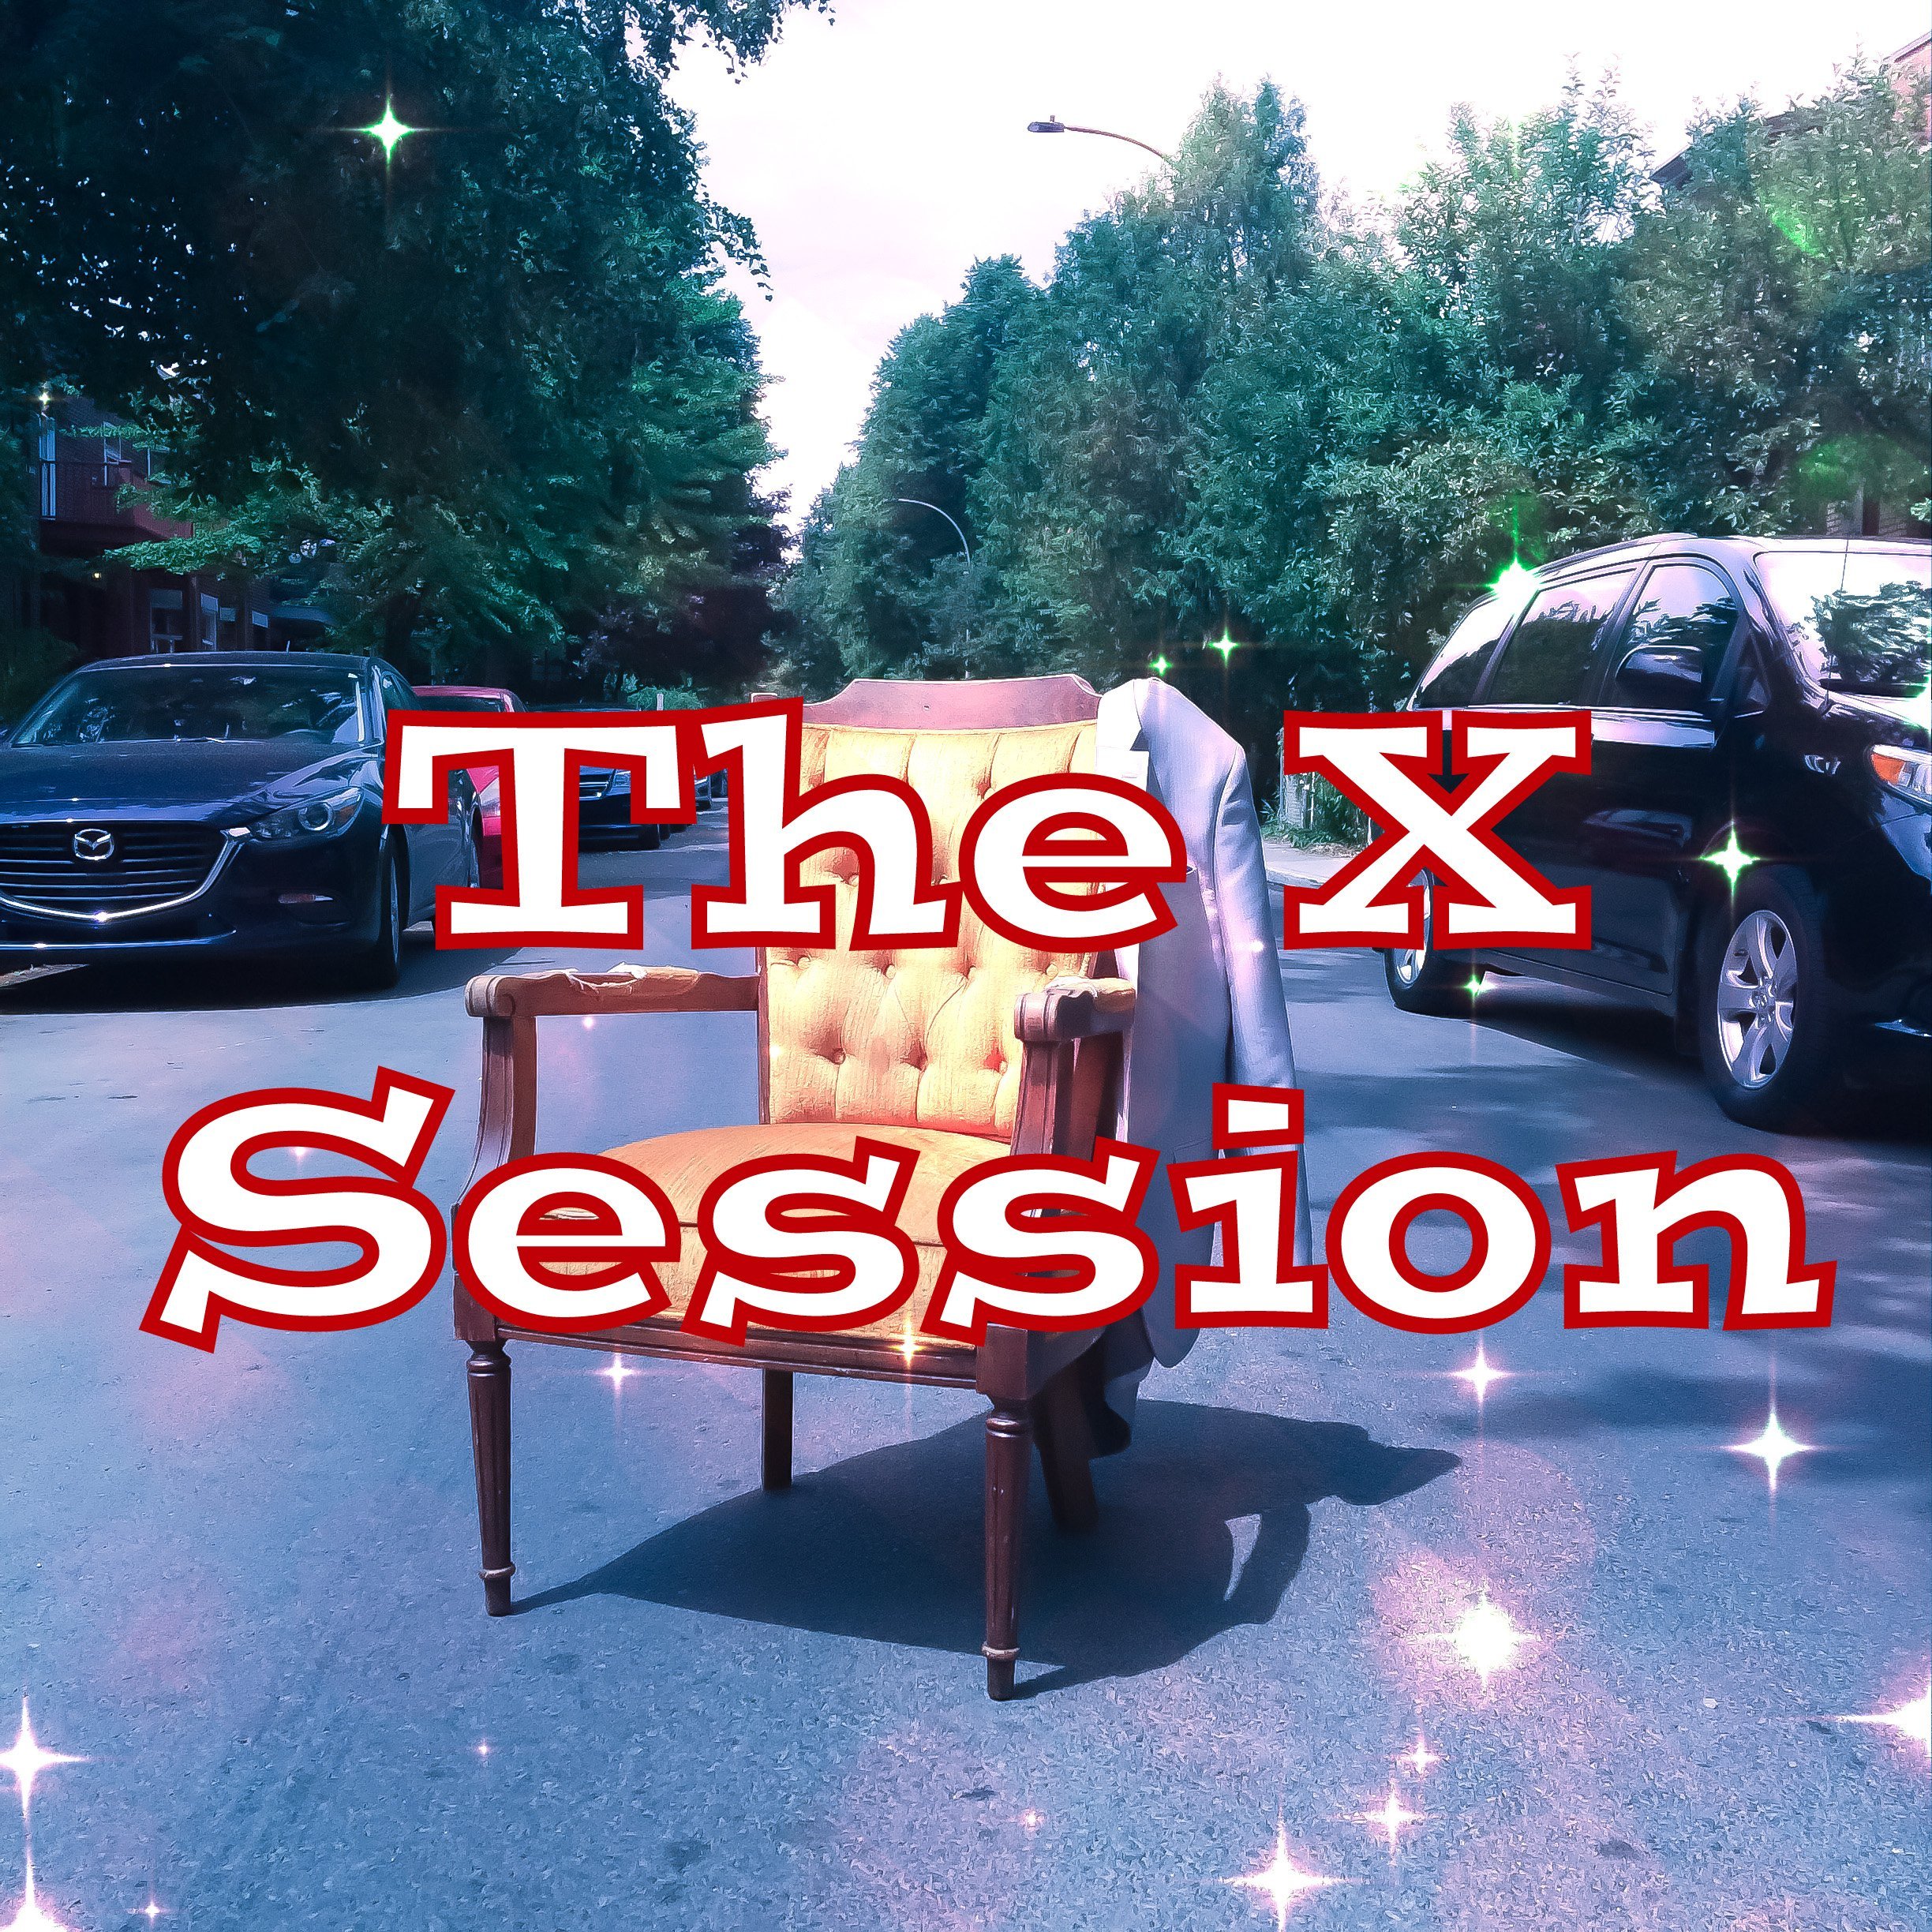 Mensuel_promo_the_x_session_square.jpeg